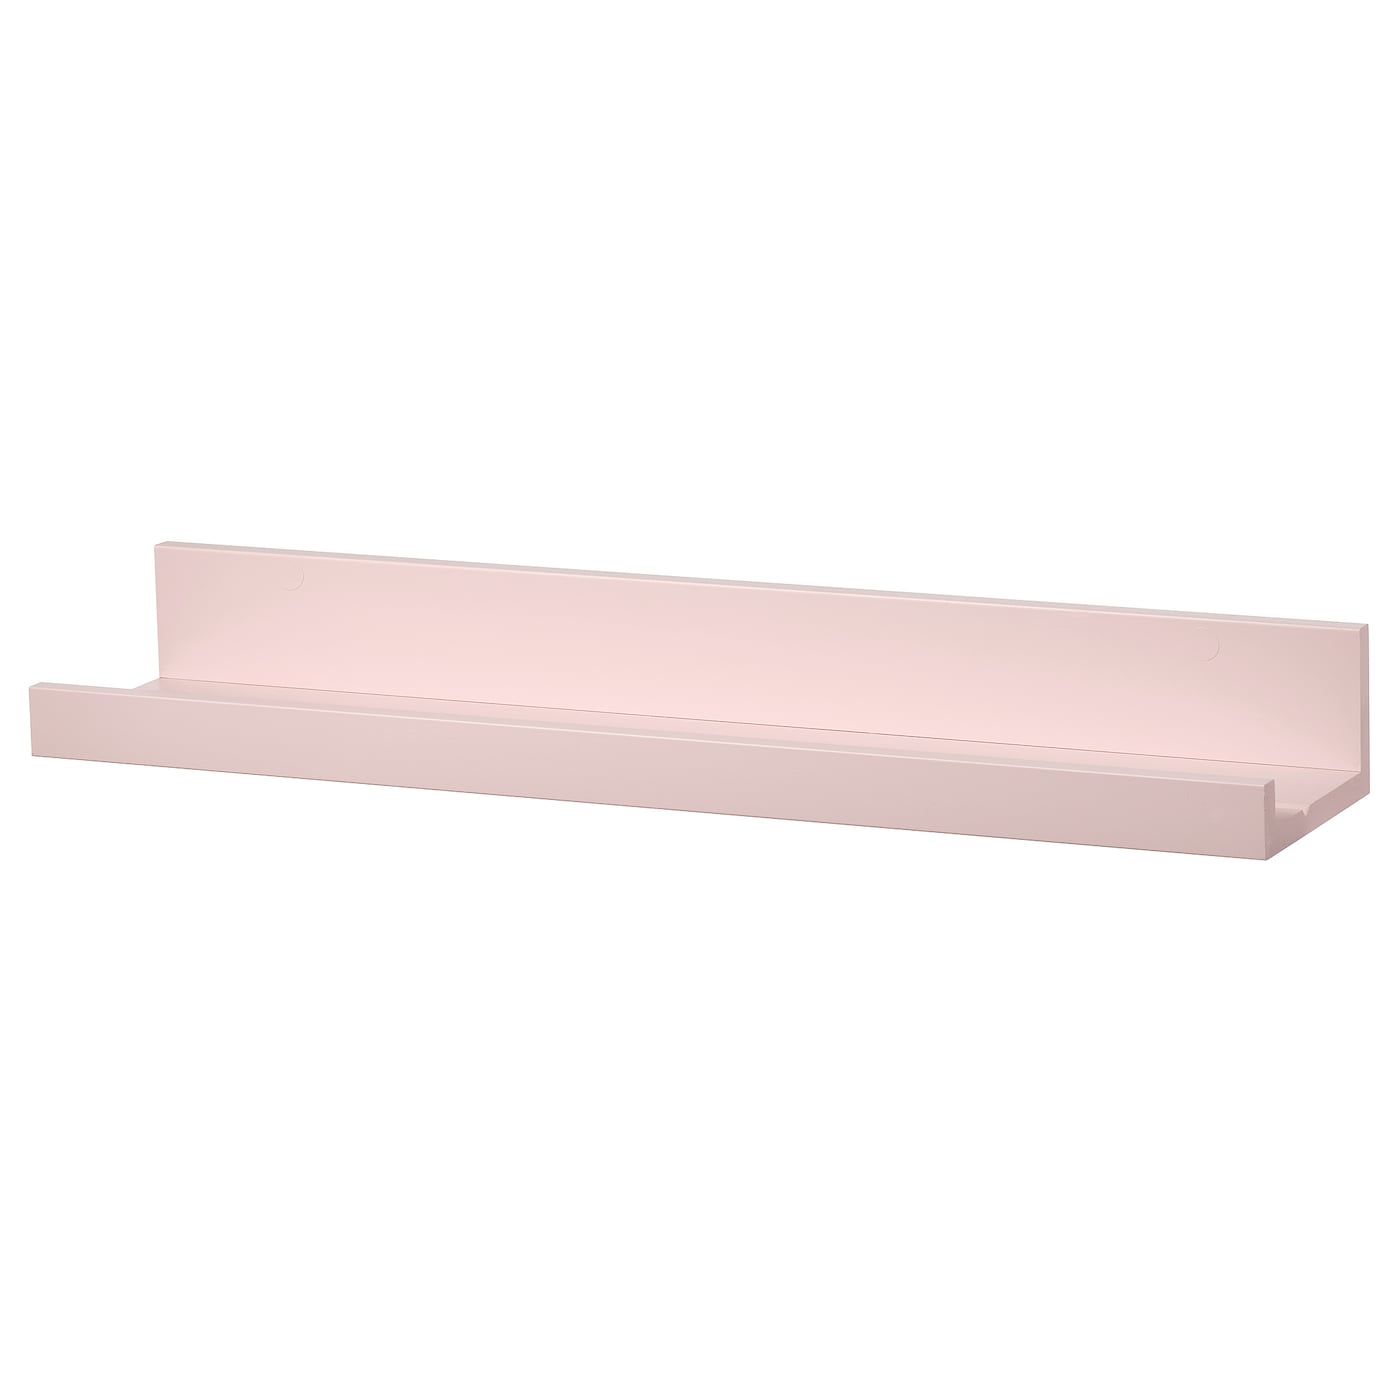 Полка настенная - MOSSLANDA  IKEA/ МОССЛЭНДА ИКЕА,  55х12 см, розовый